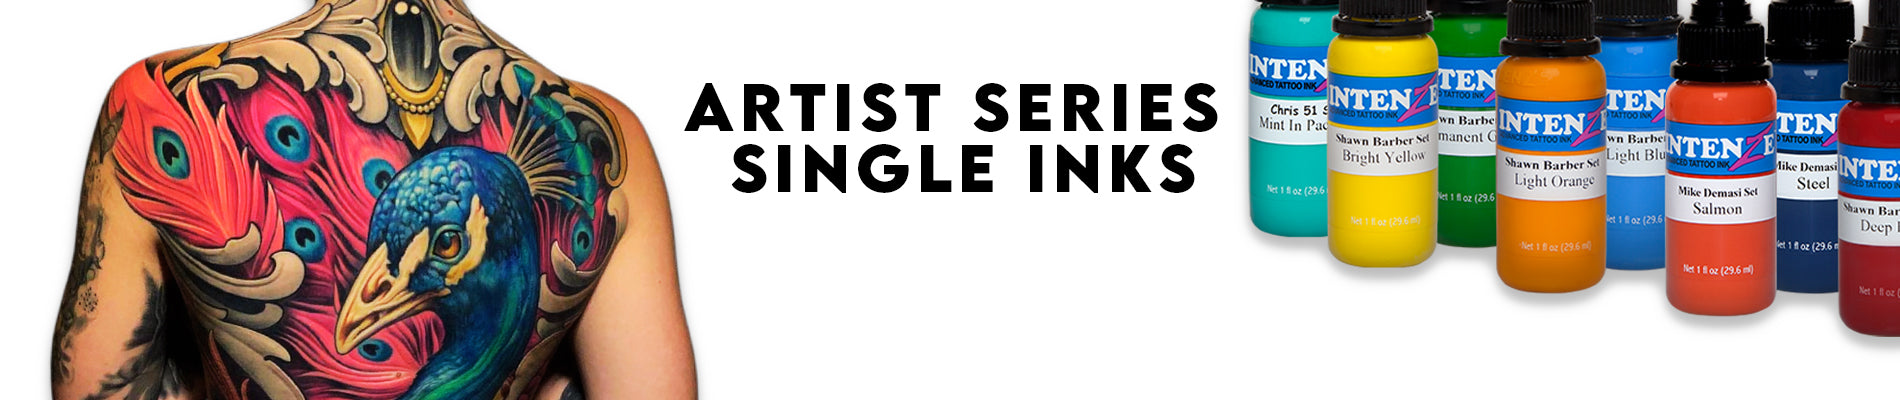 Artist Series Single Inks